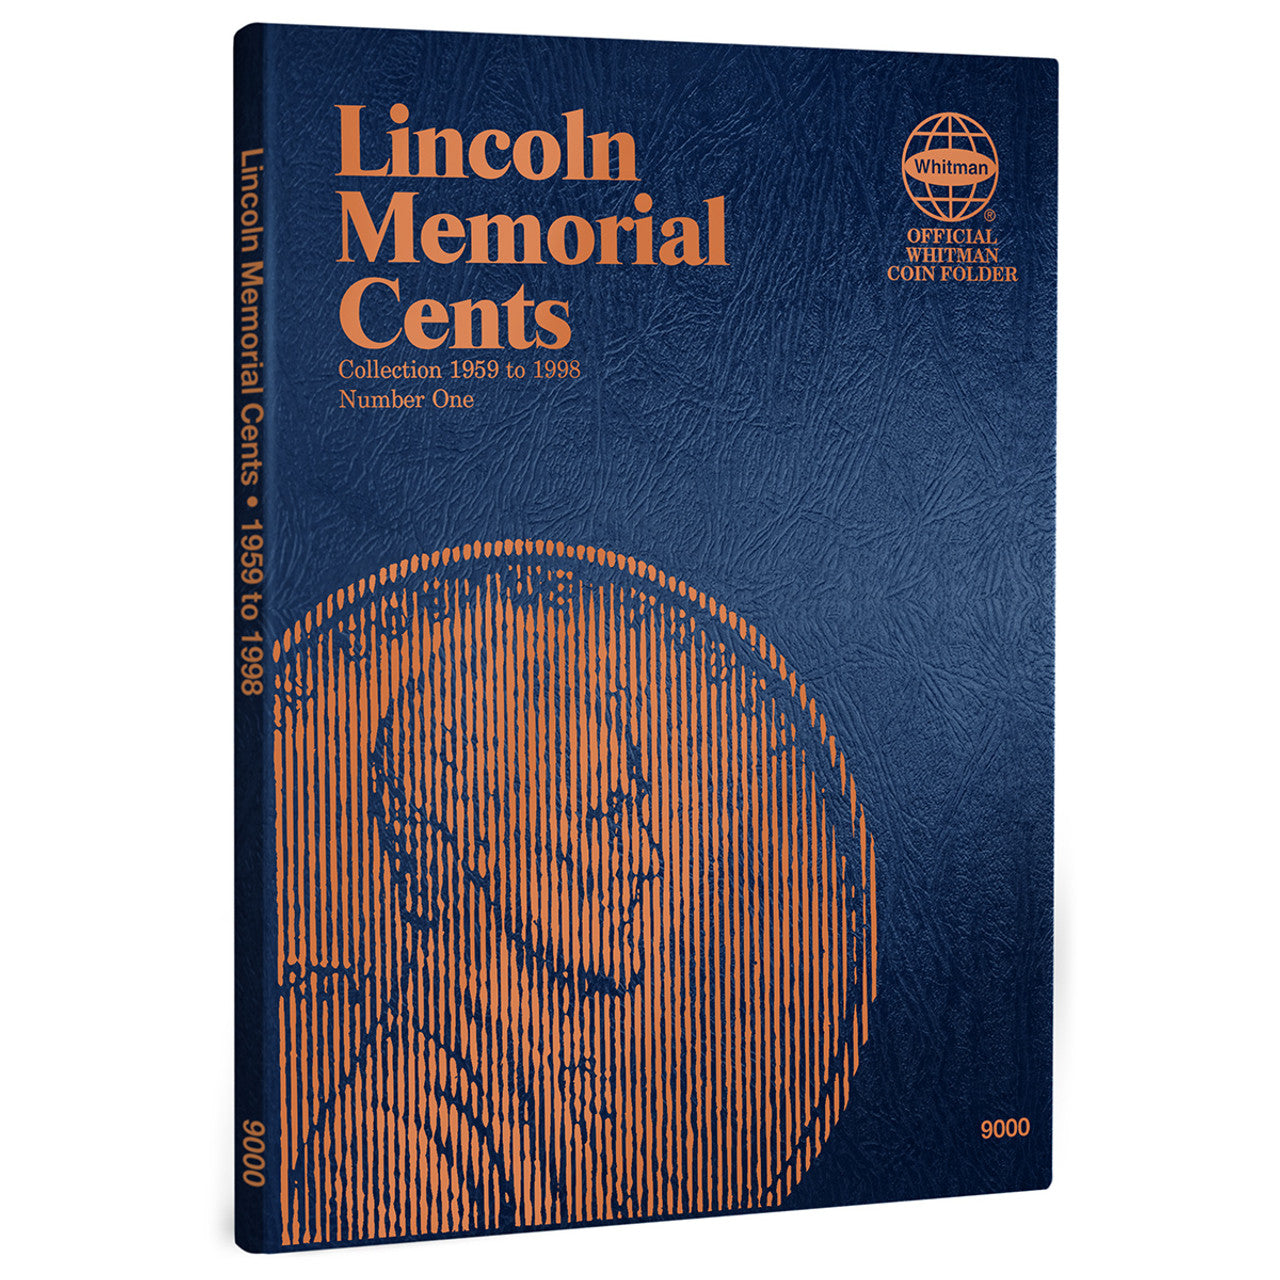 Whitman Coin Folder-Lin Mem 1959-1998